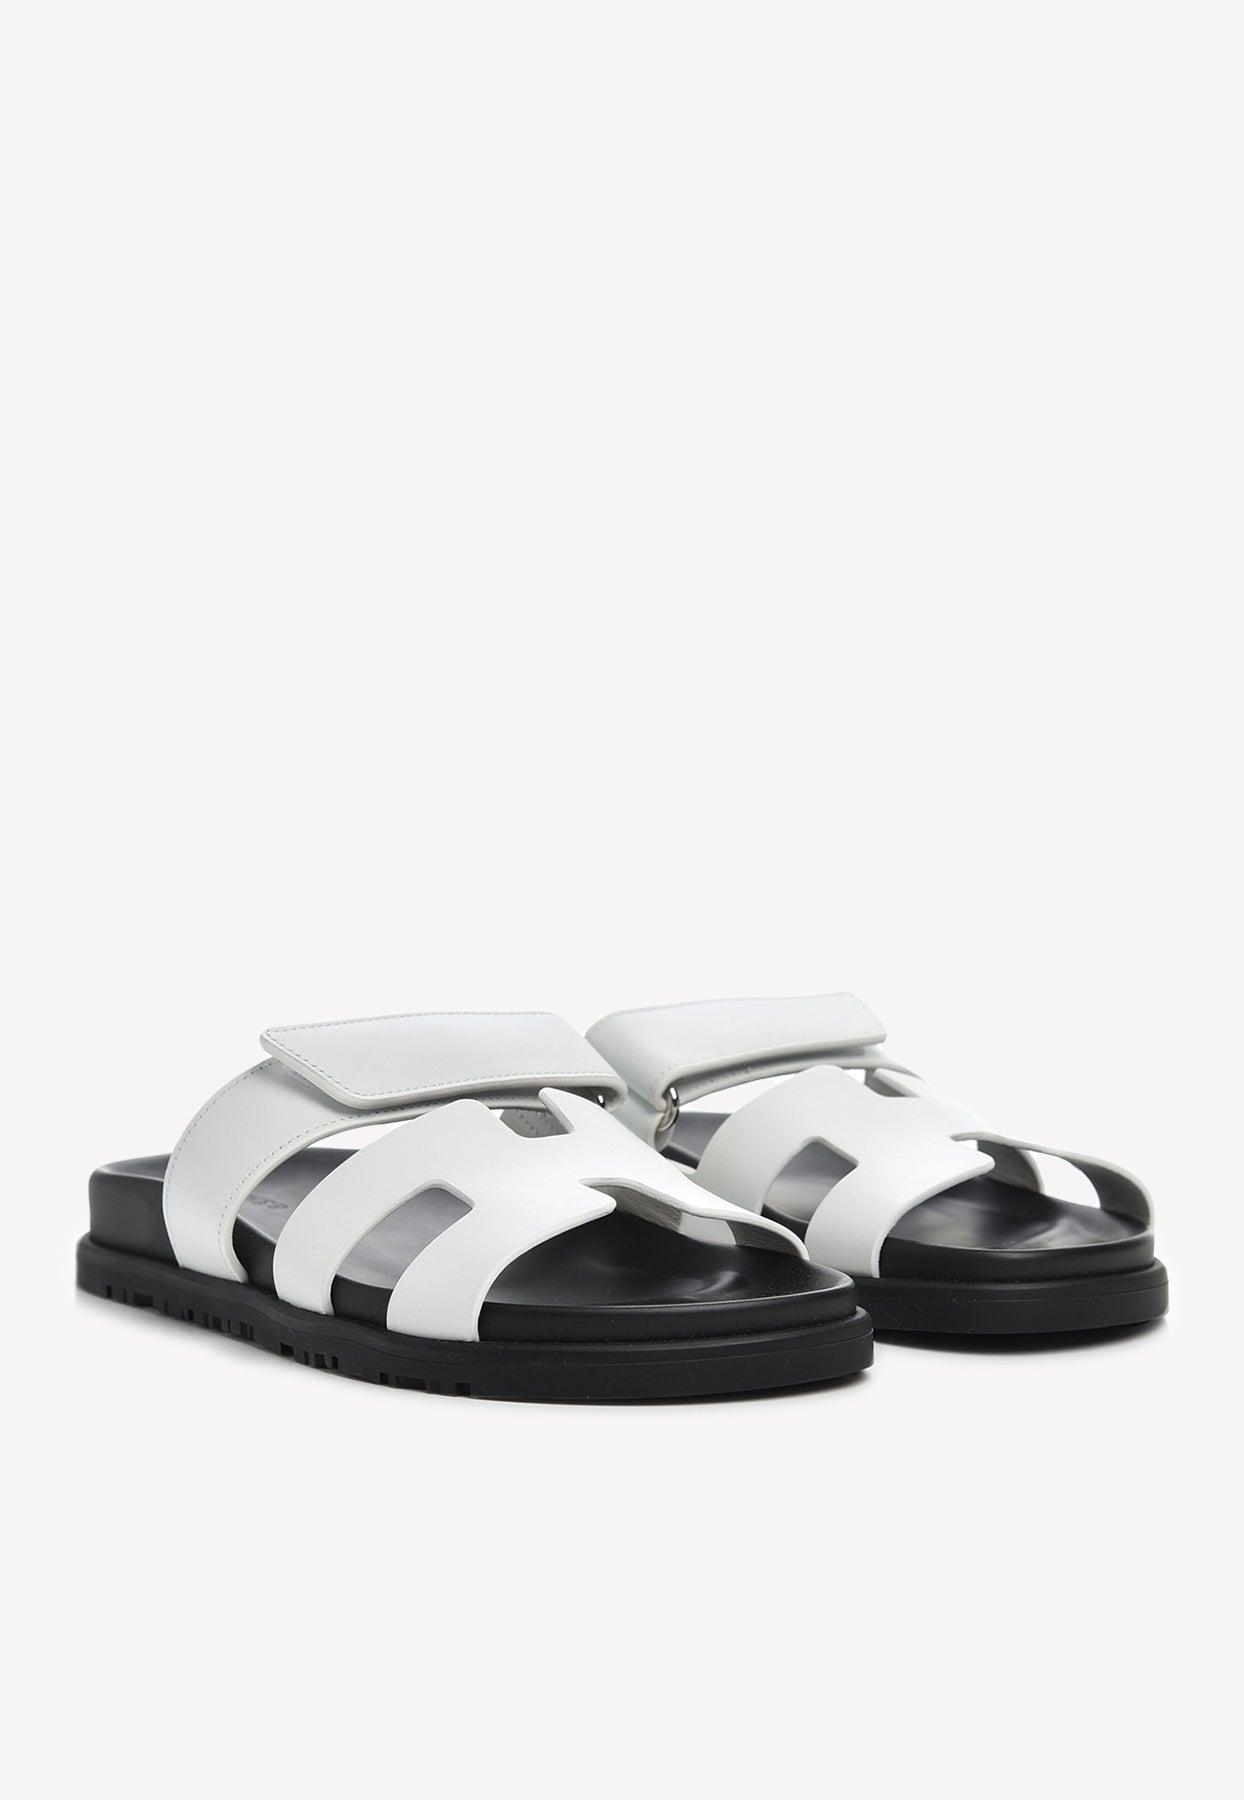 Madam doubt Interaction Hermès Chypre Sandals In Calfskin in White | Lyst